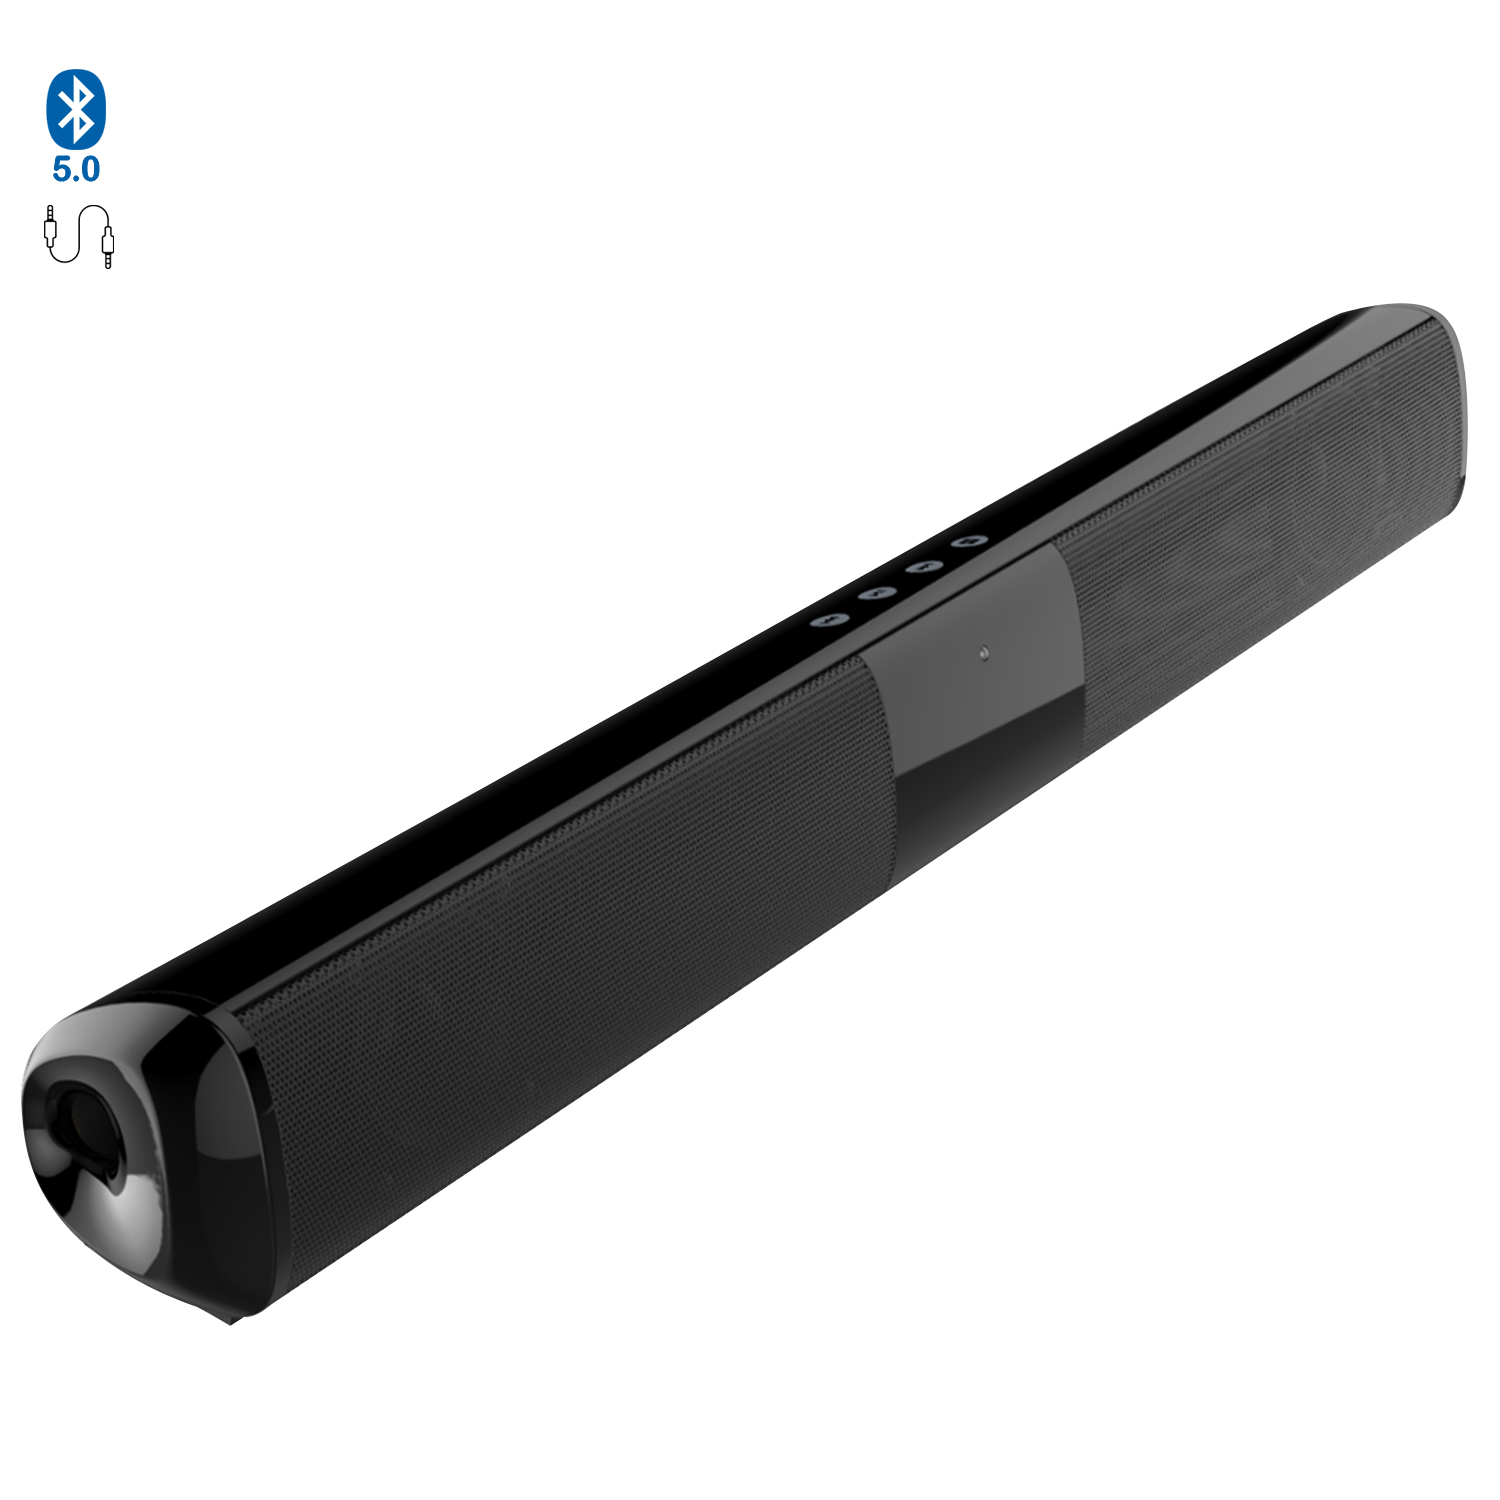 Altavoz barra de sonido A500 Bluetooth 5.0, 2 altavoces frontales. Entrada  USB, tarjeta micro SD y